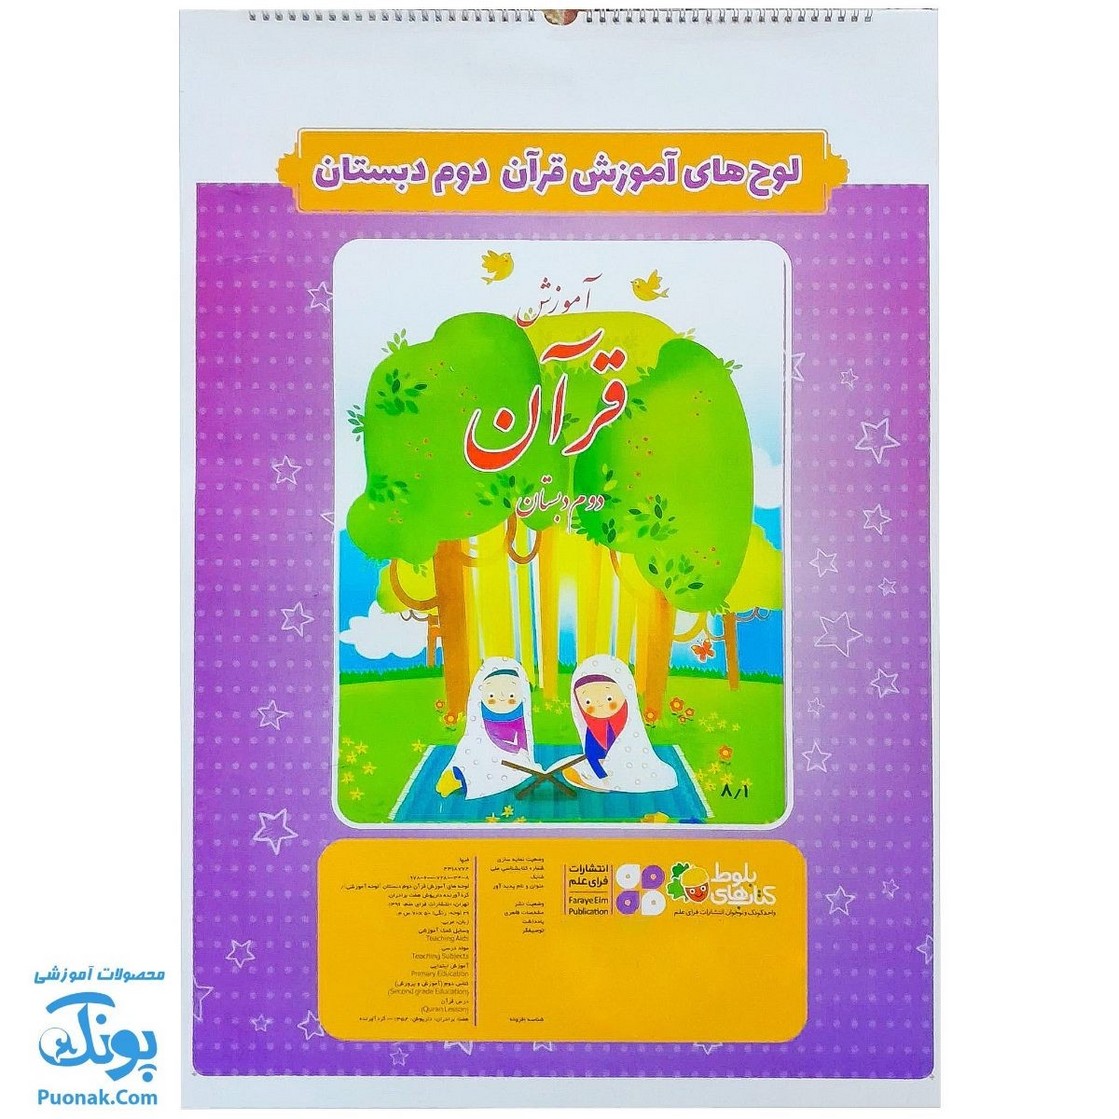 لوح پوستر سیمی آموزش قرآن دوم دبستان کلاسی ویژه معلم نشر فرای علم - پونک (۳۰ صفحه ۷۰*۵۰)